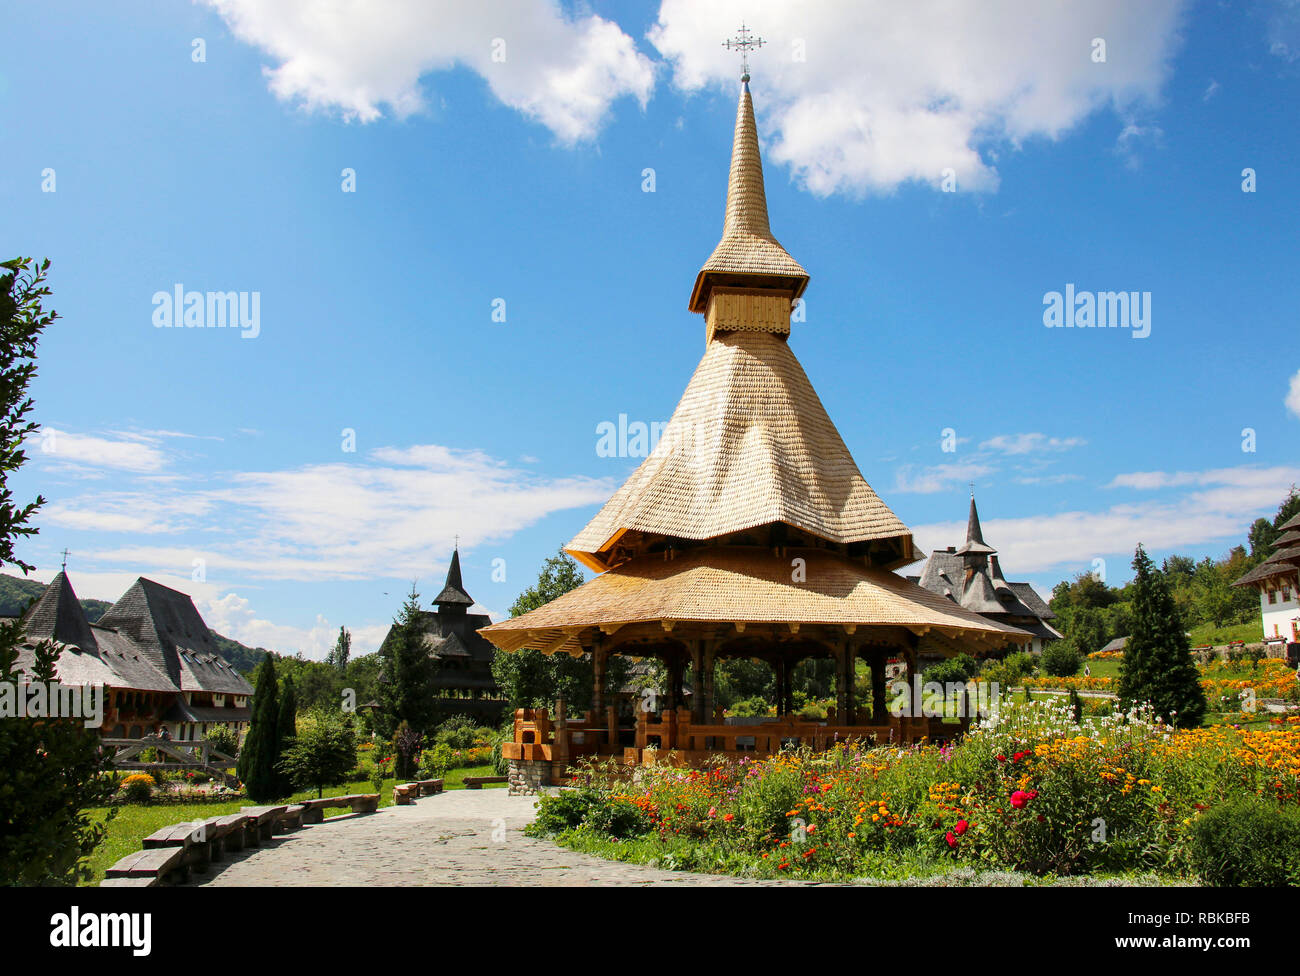 Barsana monasterio de madera de Maramures, Rumania. Barsana monasterio es uno de los principales puntos de interés en la zona de Maramures. Foto de stock